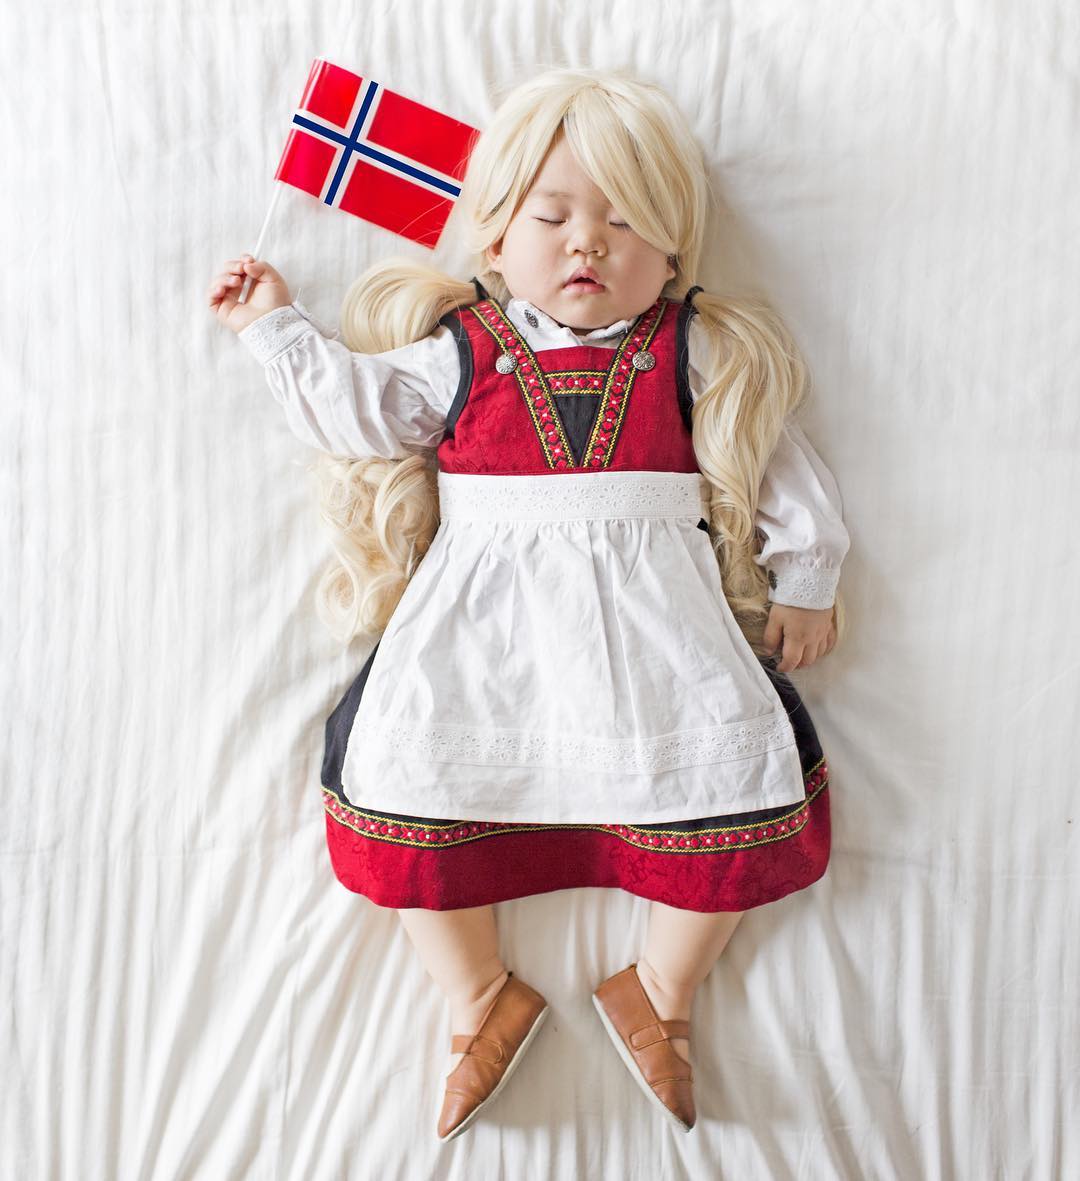 Майка снима спящата си дъщеря с народни носии - Норвегия